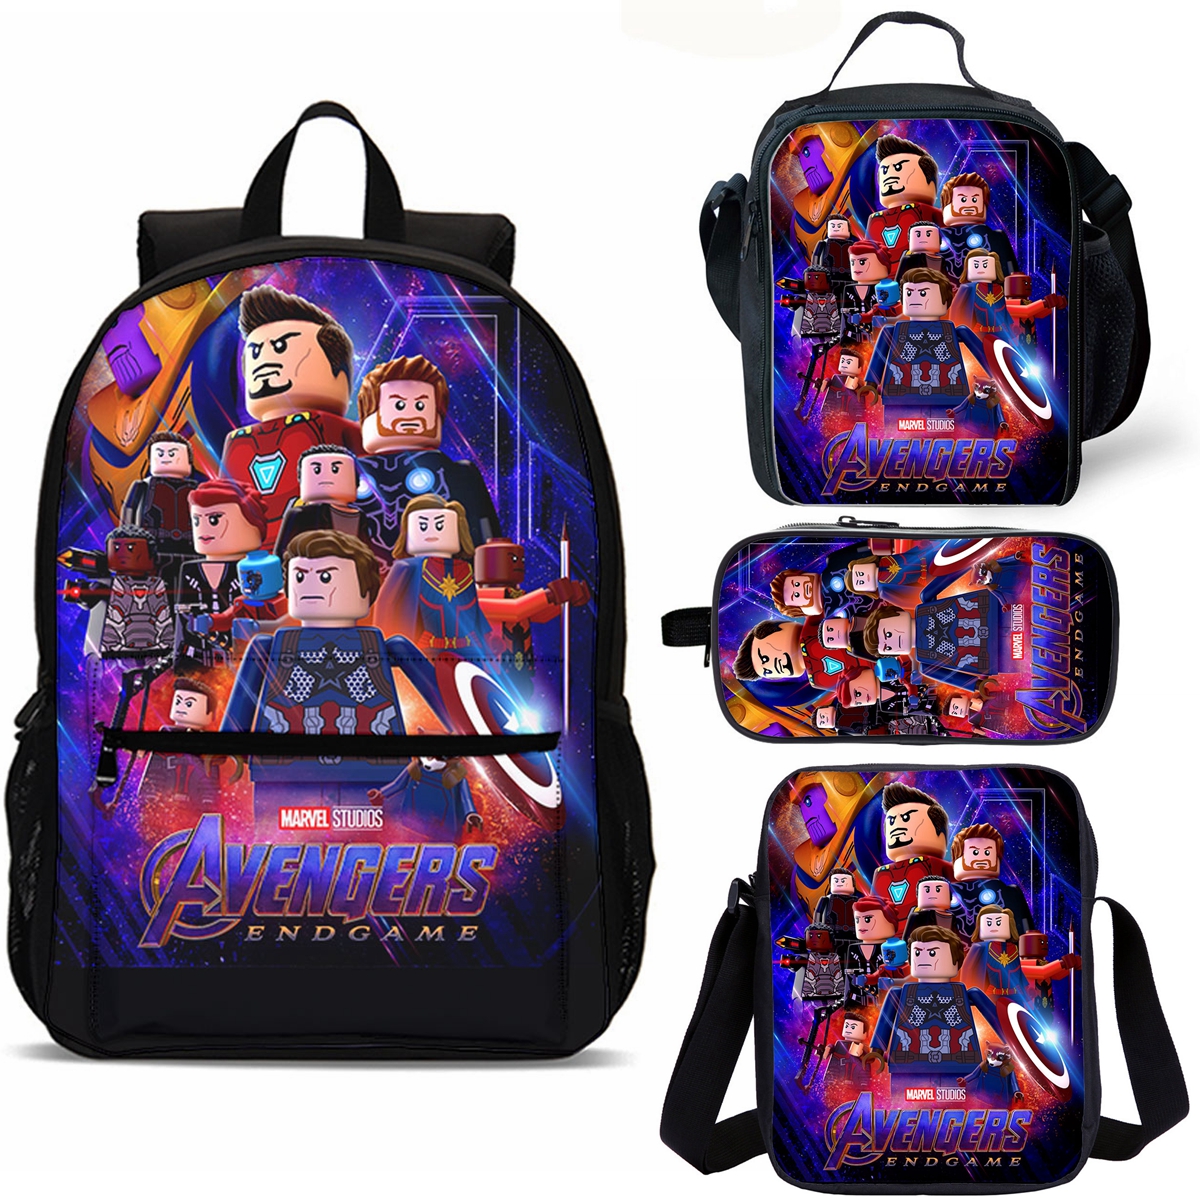 Avengers Endgame School Merch 18" School Backpack Lunch Bag Shoulder Bag Pencil Case